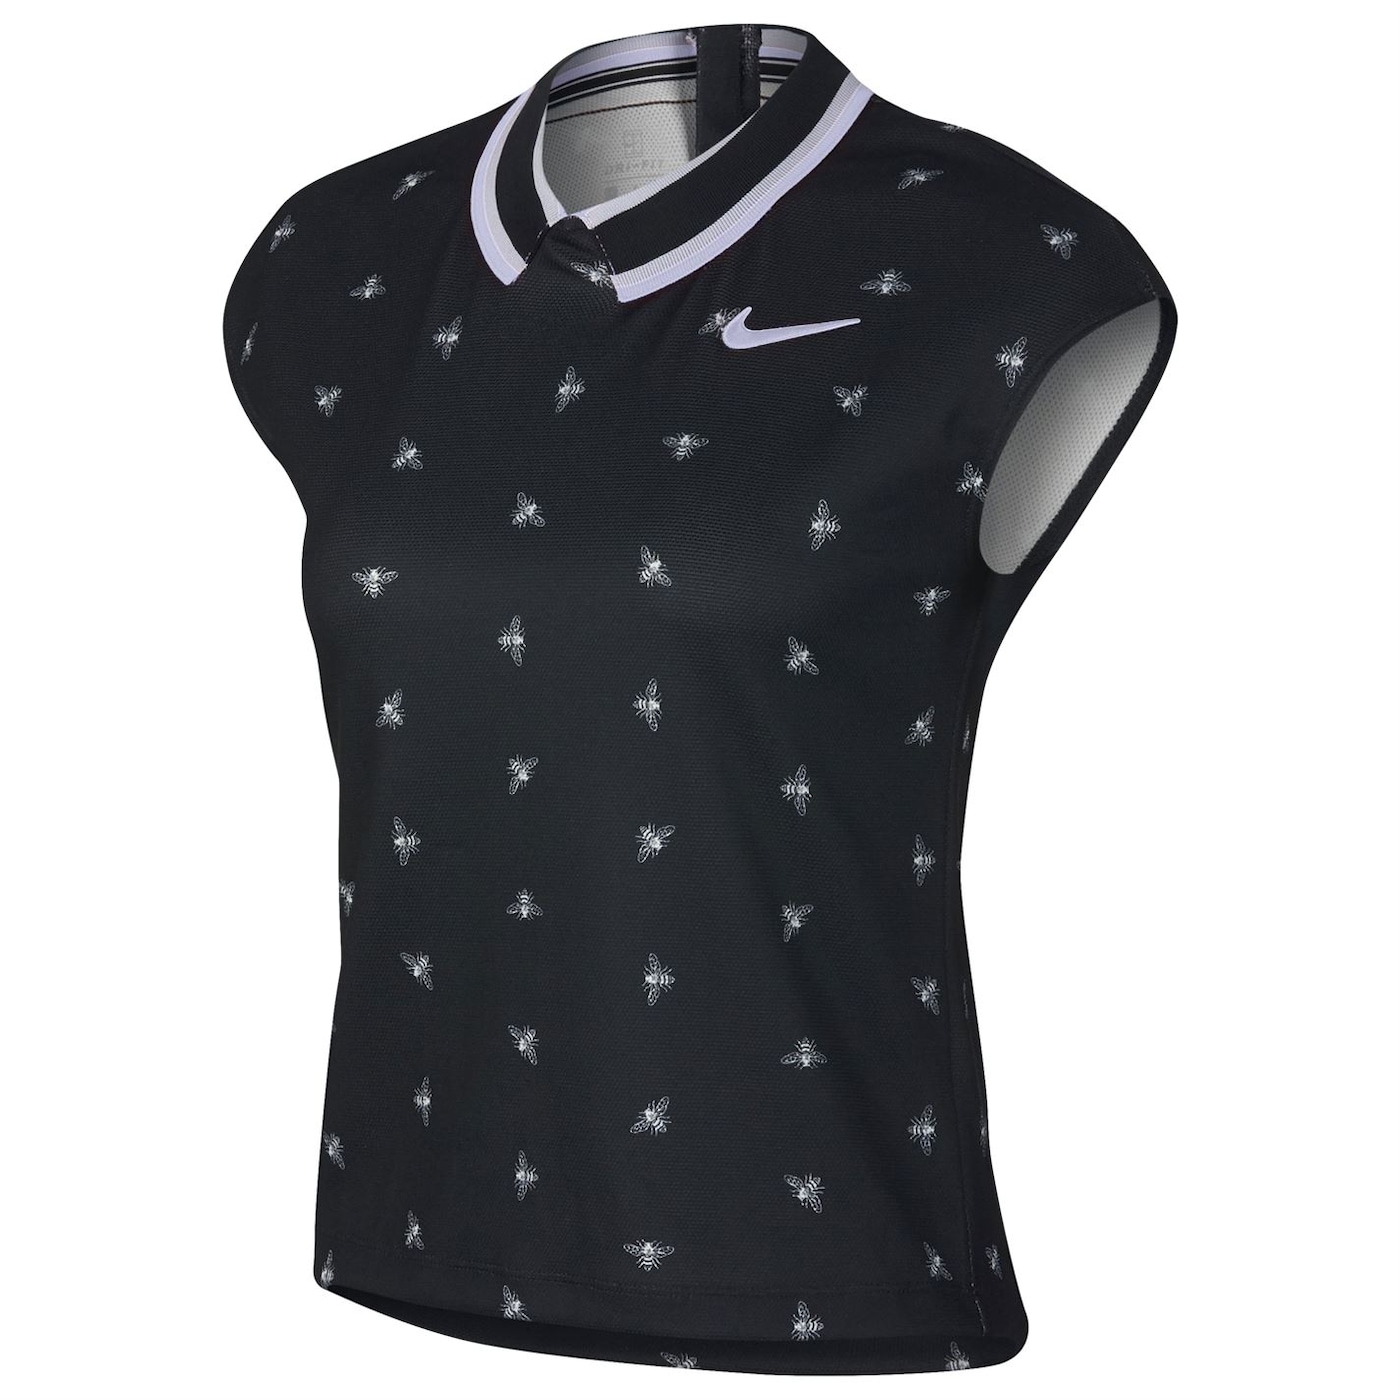 Жени  Дамско облекло  Блузи  С къс ръкав Nike Dry T Shirt Ladies 976074-6016403